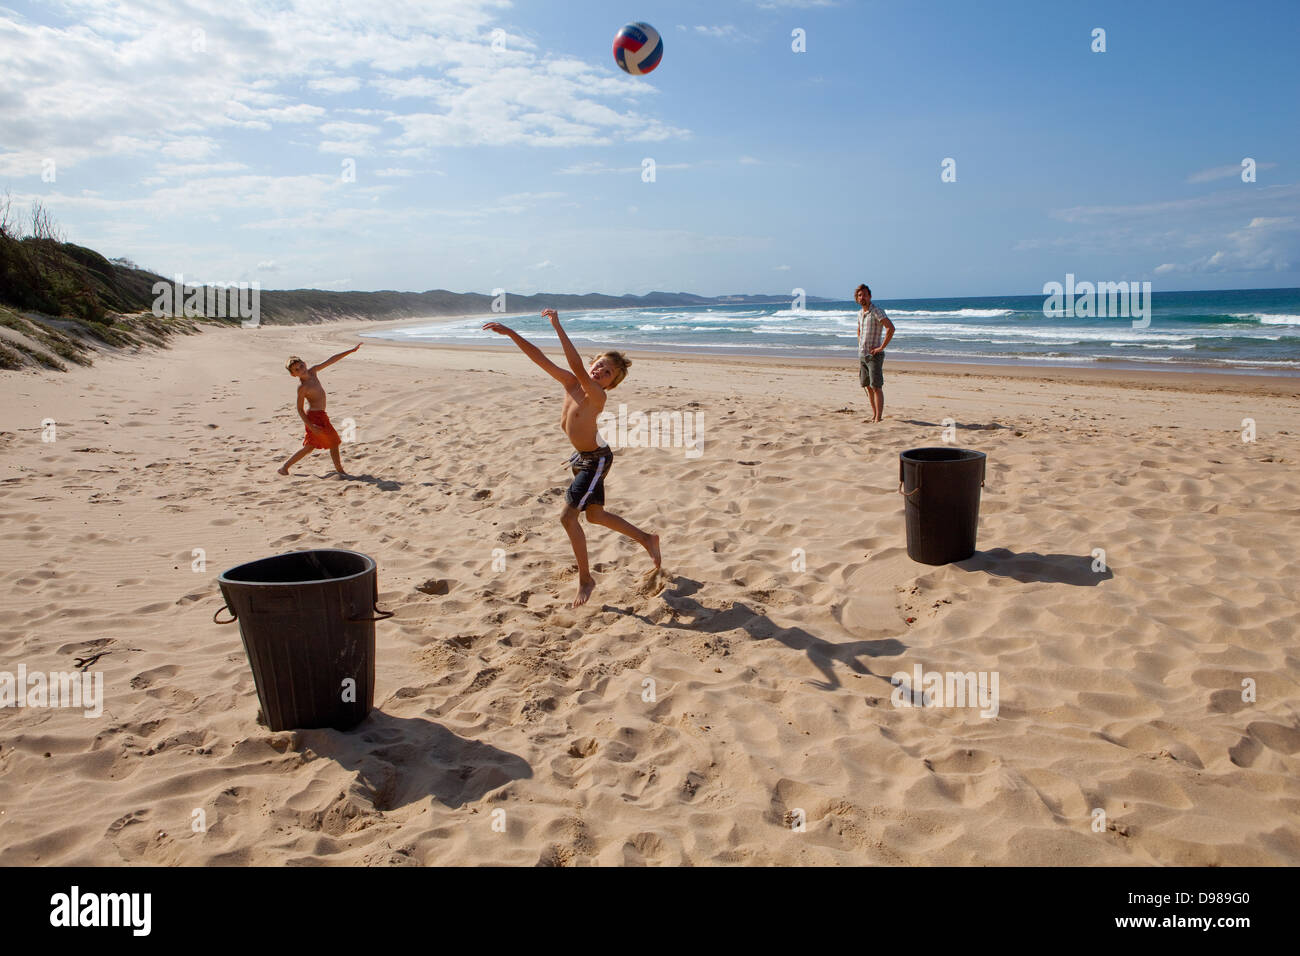 Jouer avec une balle sur les plages préservées de la zone humide d'Isimangaliso, parc de St Lucia, Afrique du Sud Banque D'Images